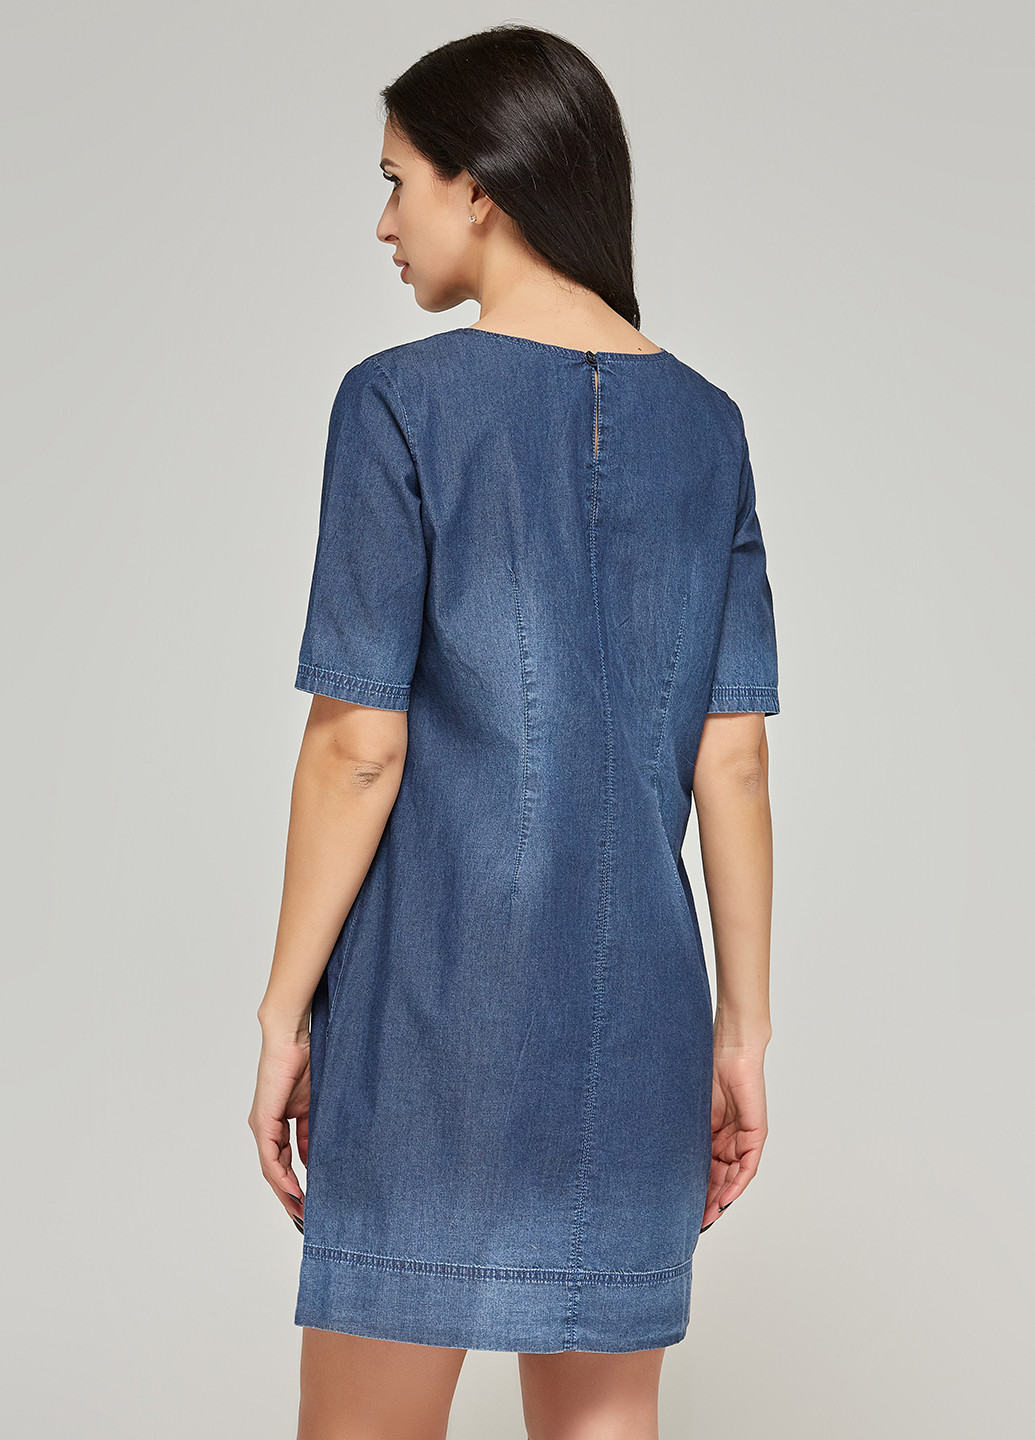 Синя джинсова сукня сукня-футболка MN з малюнком